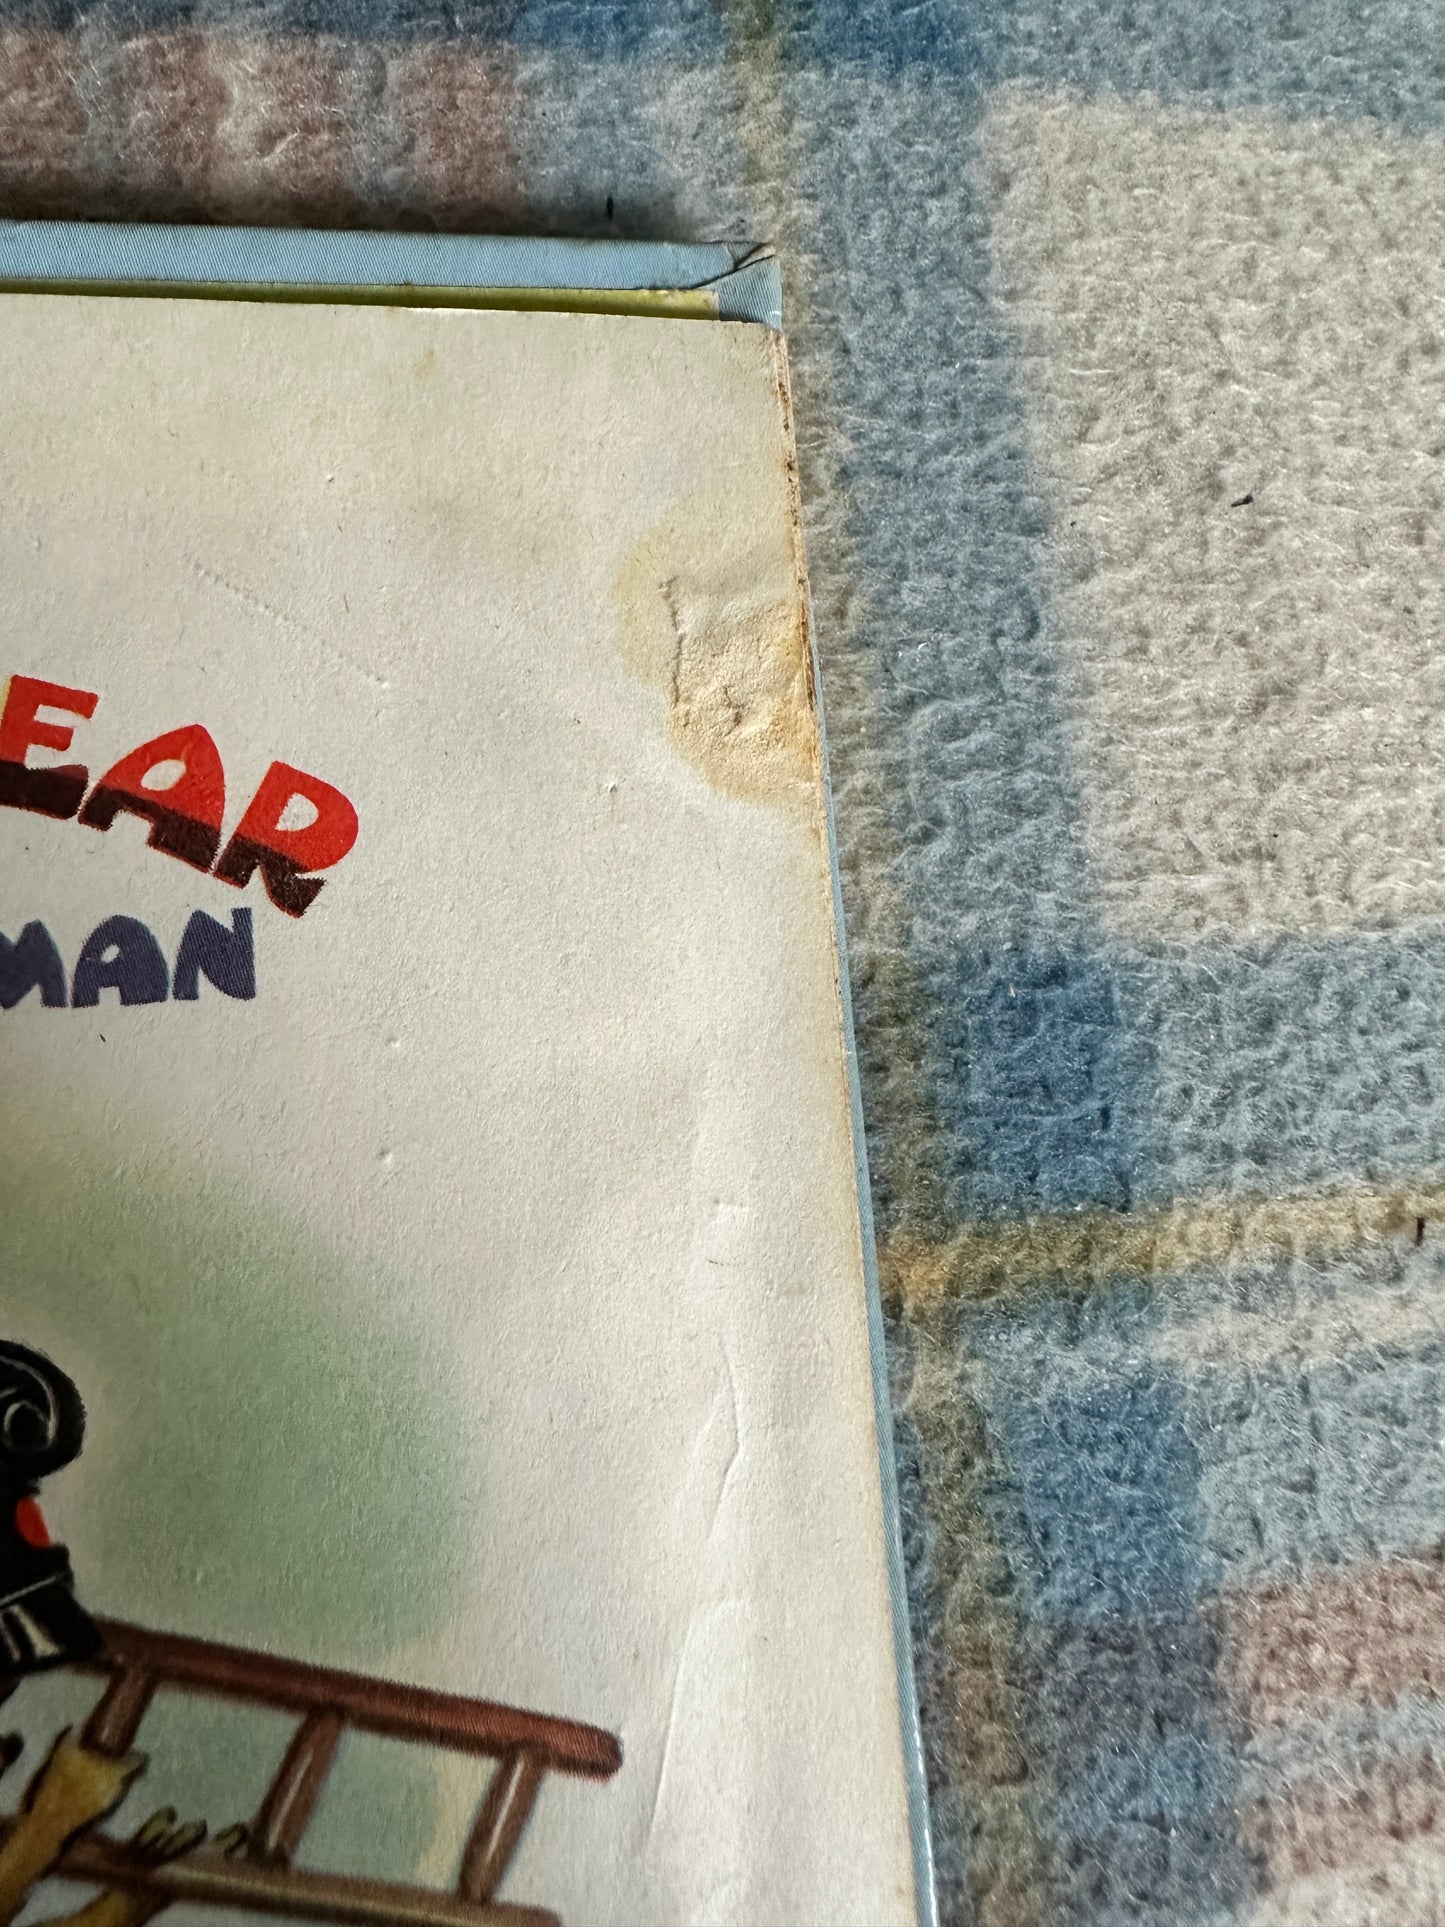 1959 Bobby Bear The Fireman - Arthur Groom(Little Poppet Series Dean & Son Ltd)